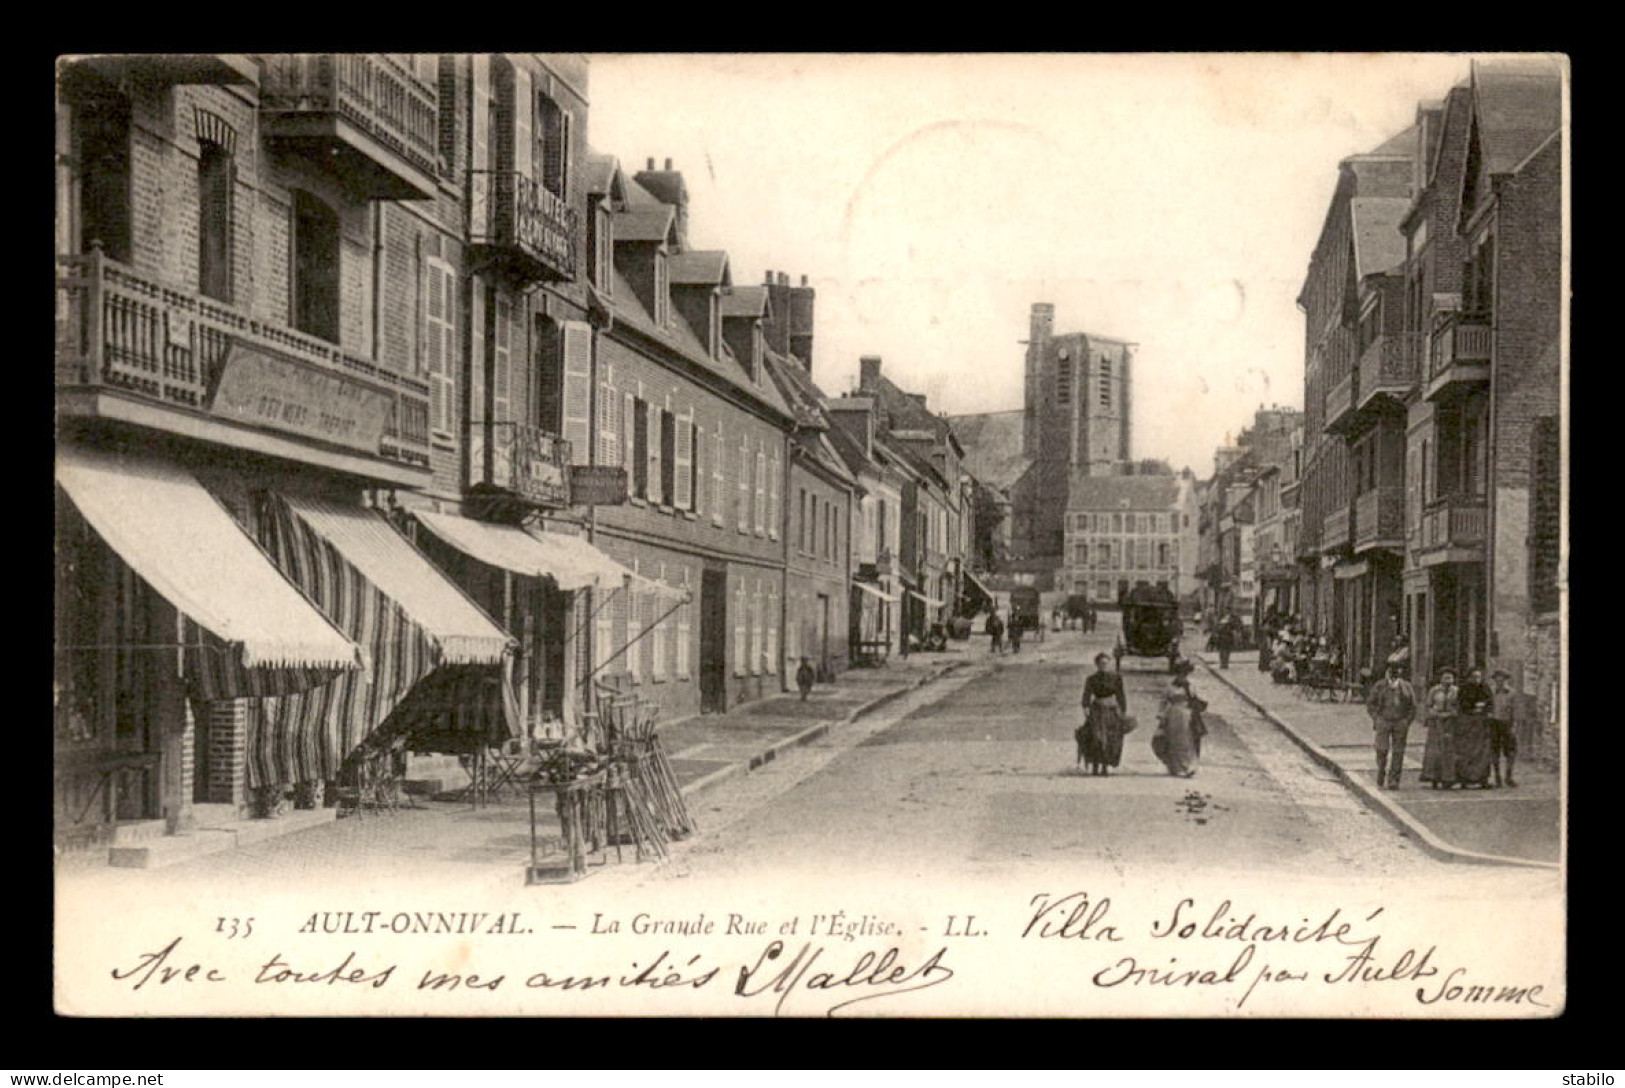 CARTE D'AULT-ONIVAL (SOMME - FRANCE) TAXEE AVEC 1 TIMBRE A 10 CENTIMES - CACHET DE RHEINFELDEN DU 19.08.1904 - Postage Due